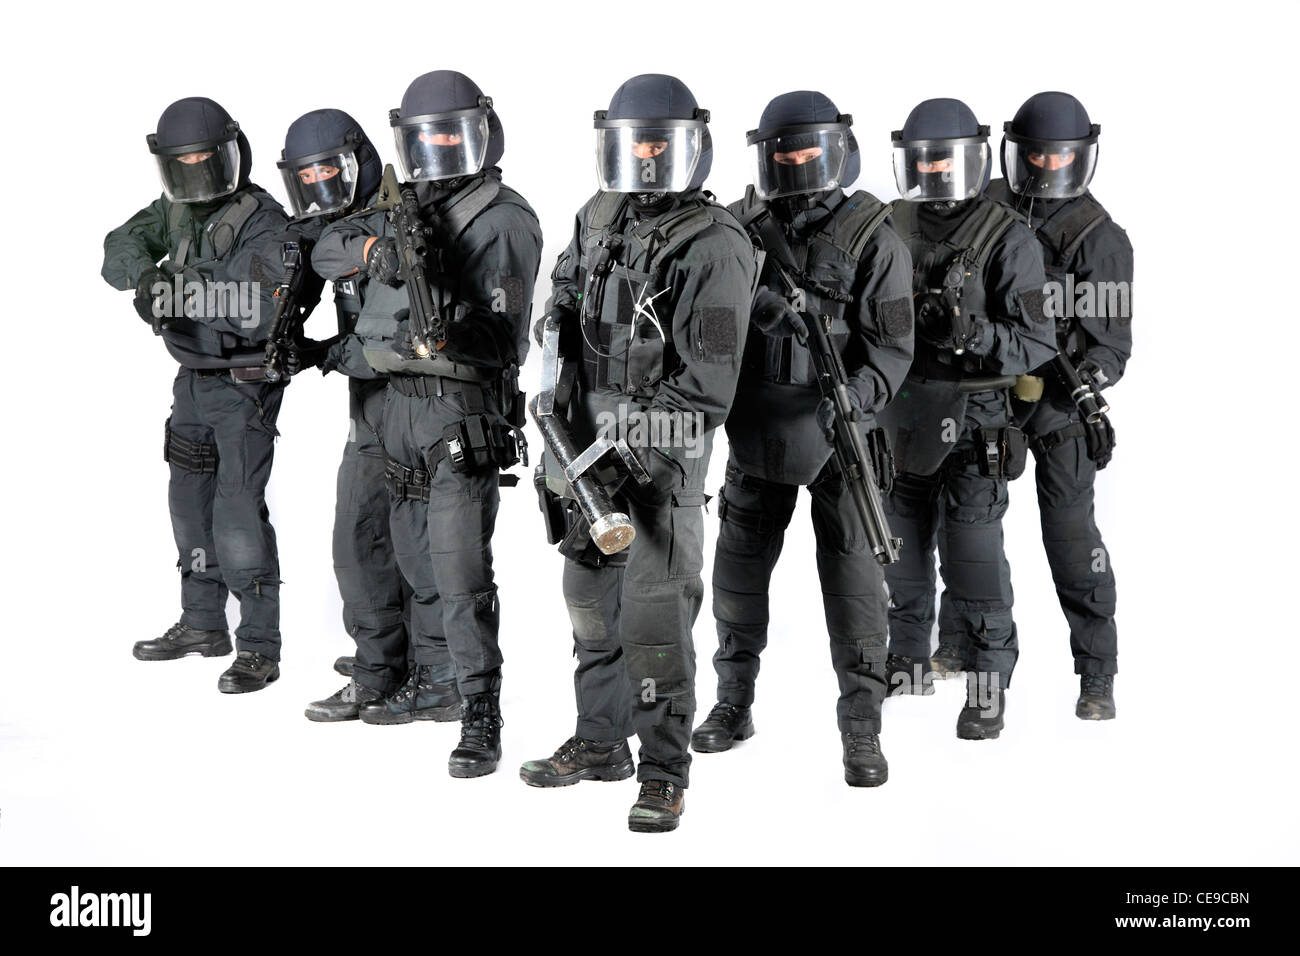 Cooperazione di polizia, SWAT team. Delle operazioni speciali di polizia, unità di lotta contro le forme gravi di criminalità organizzata, terrorismo, rapitori, contro la criminalità organizzata. Foto Stock